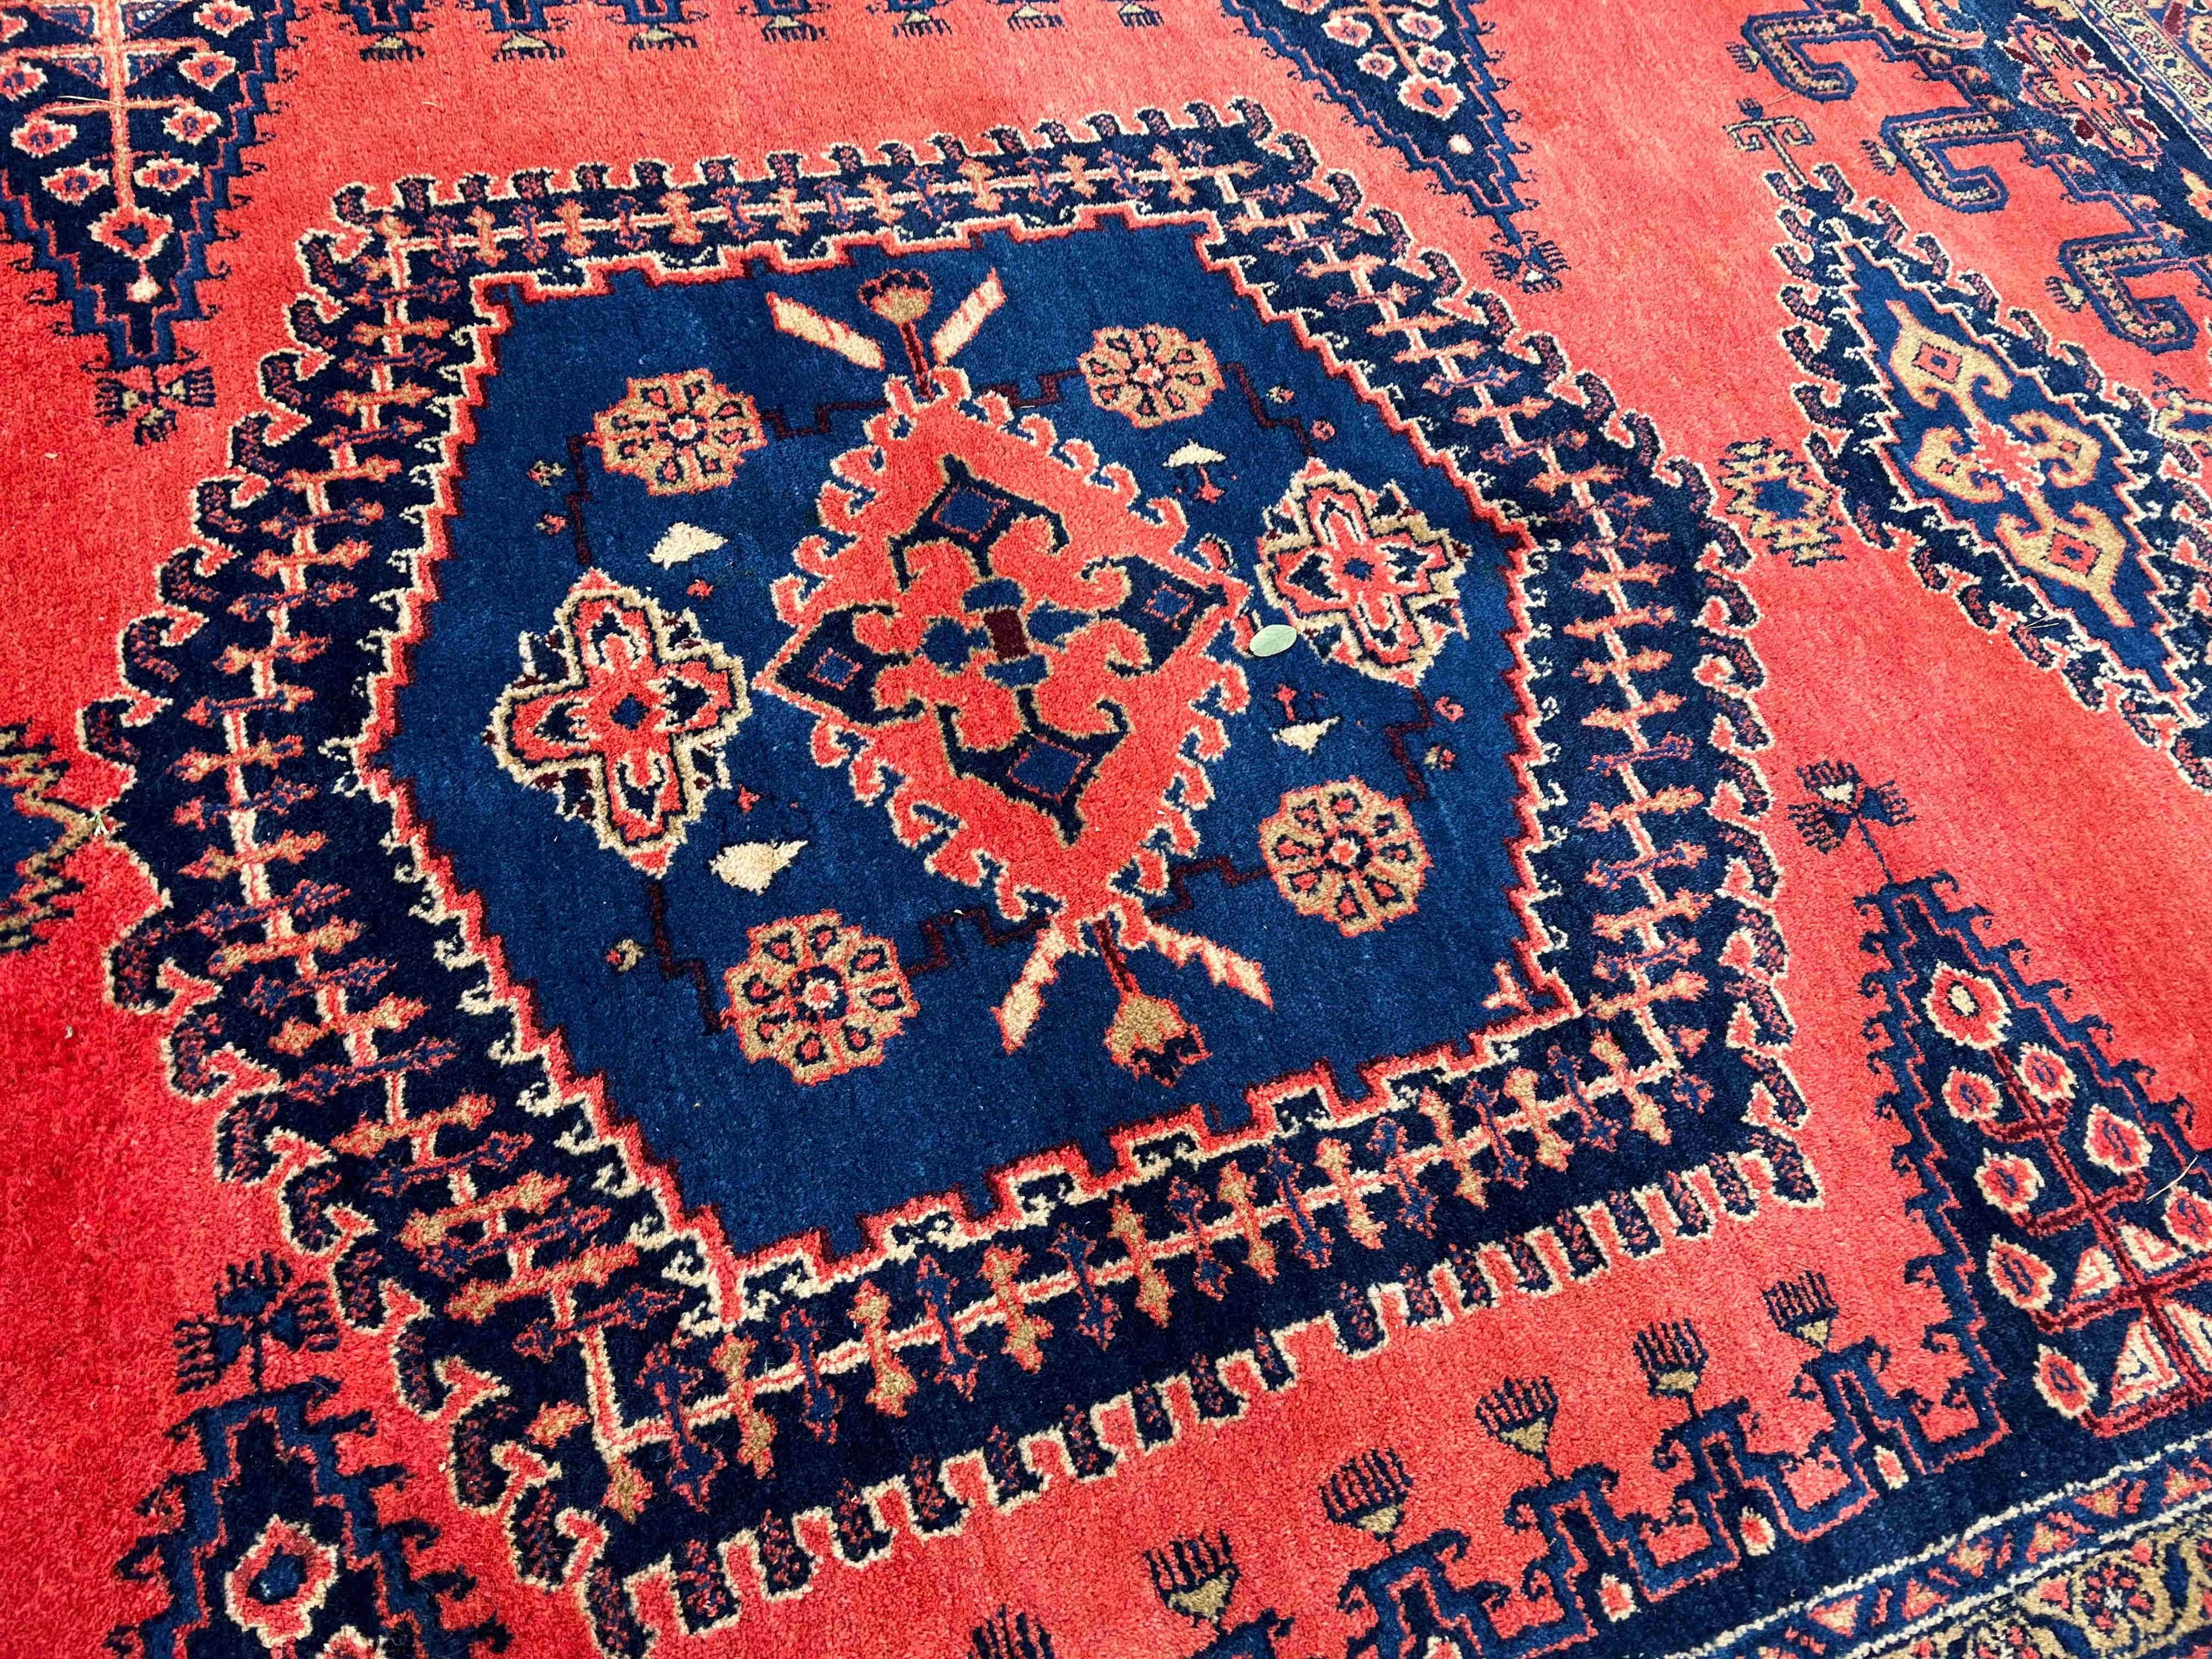 Dywan perski ręcznie tkany Iran Wiss 373x240 galeria 30 tys